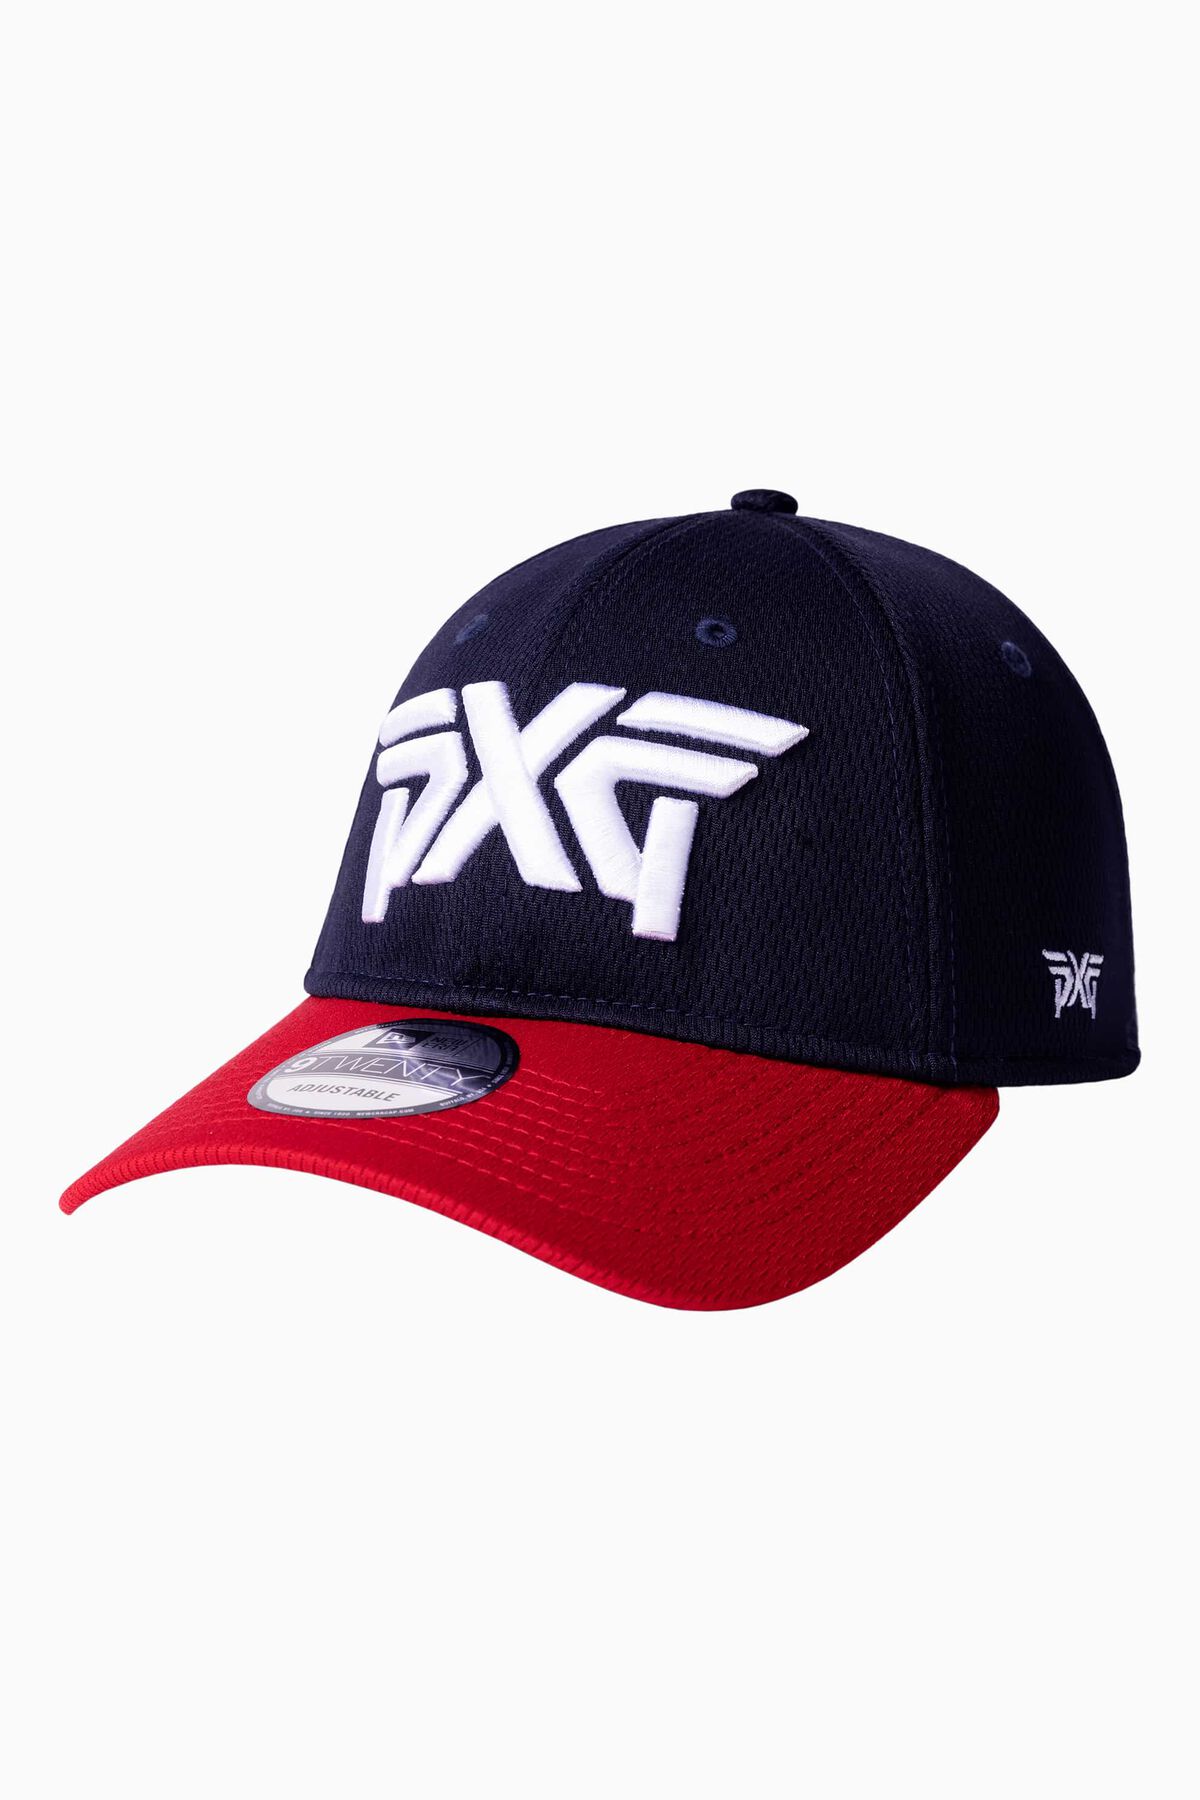 PXG GA Navy/Red 9TWENTY Adjustable Cap 